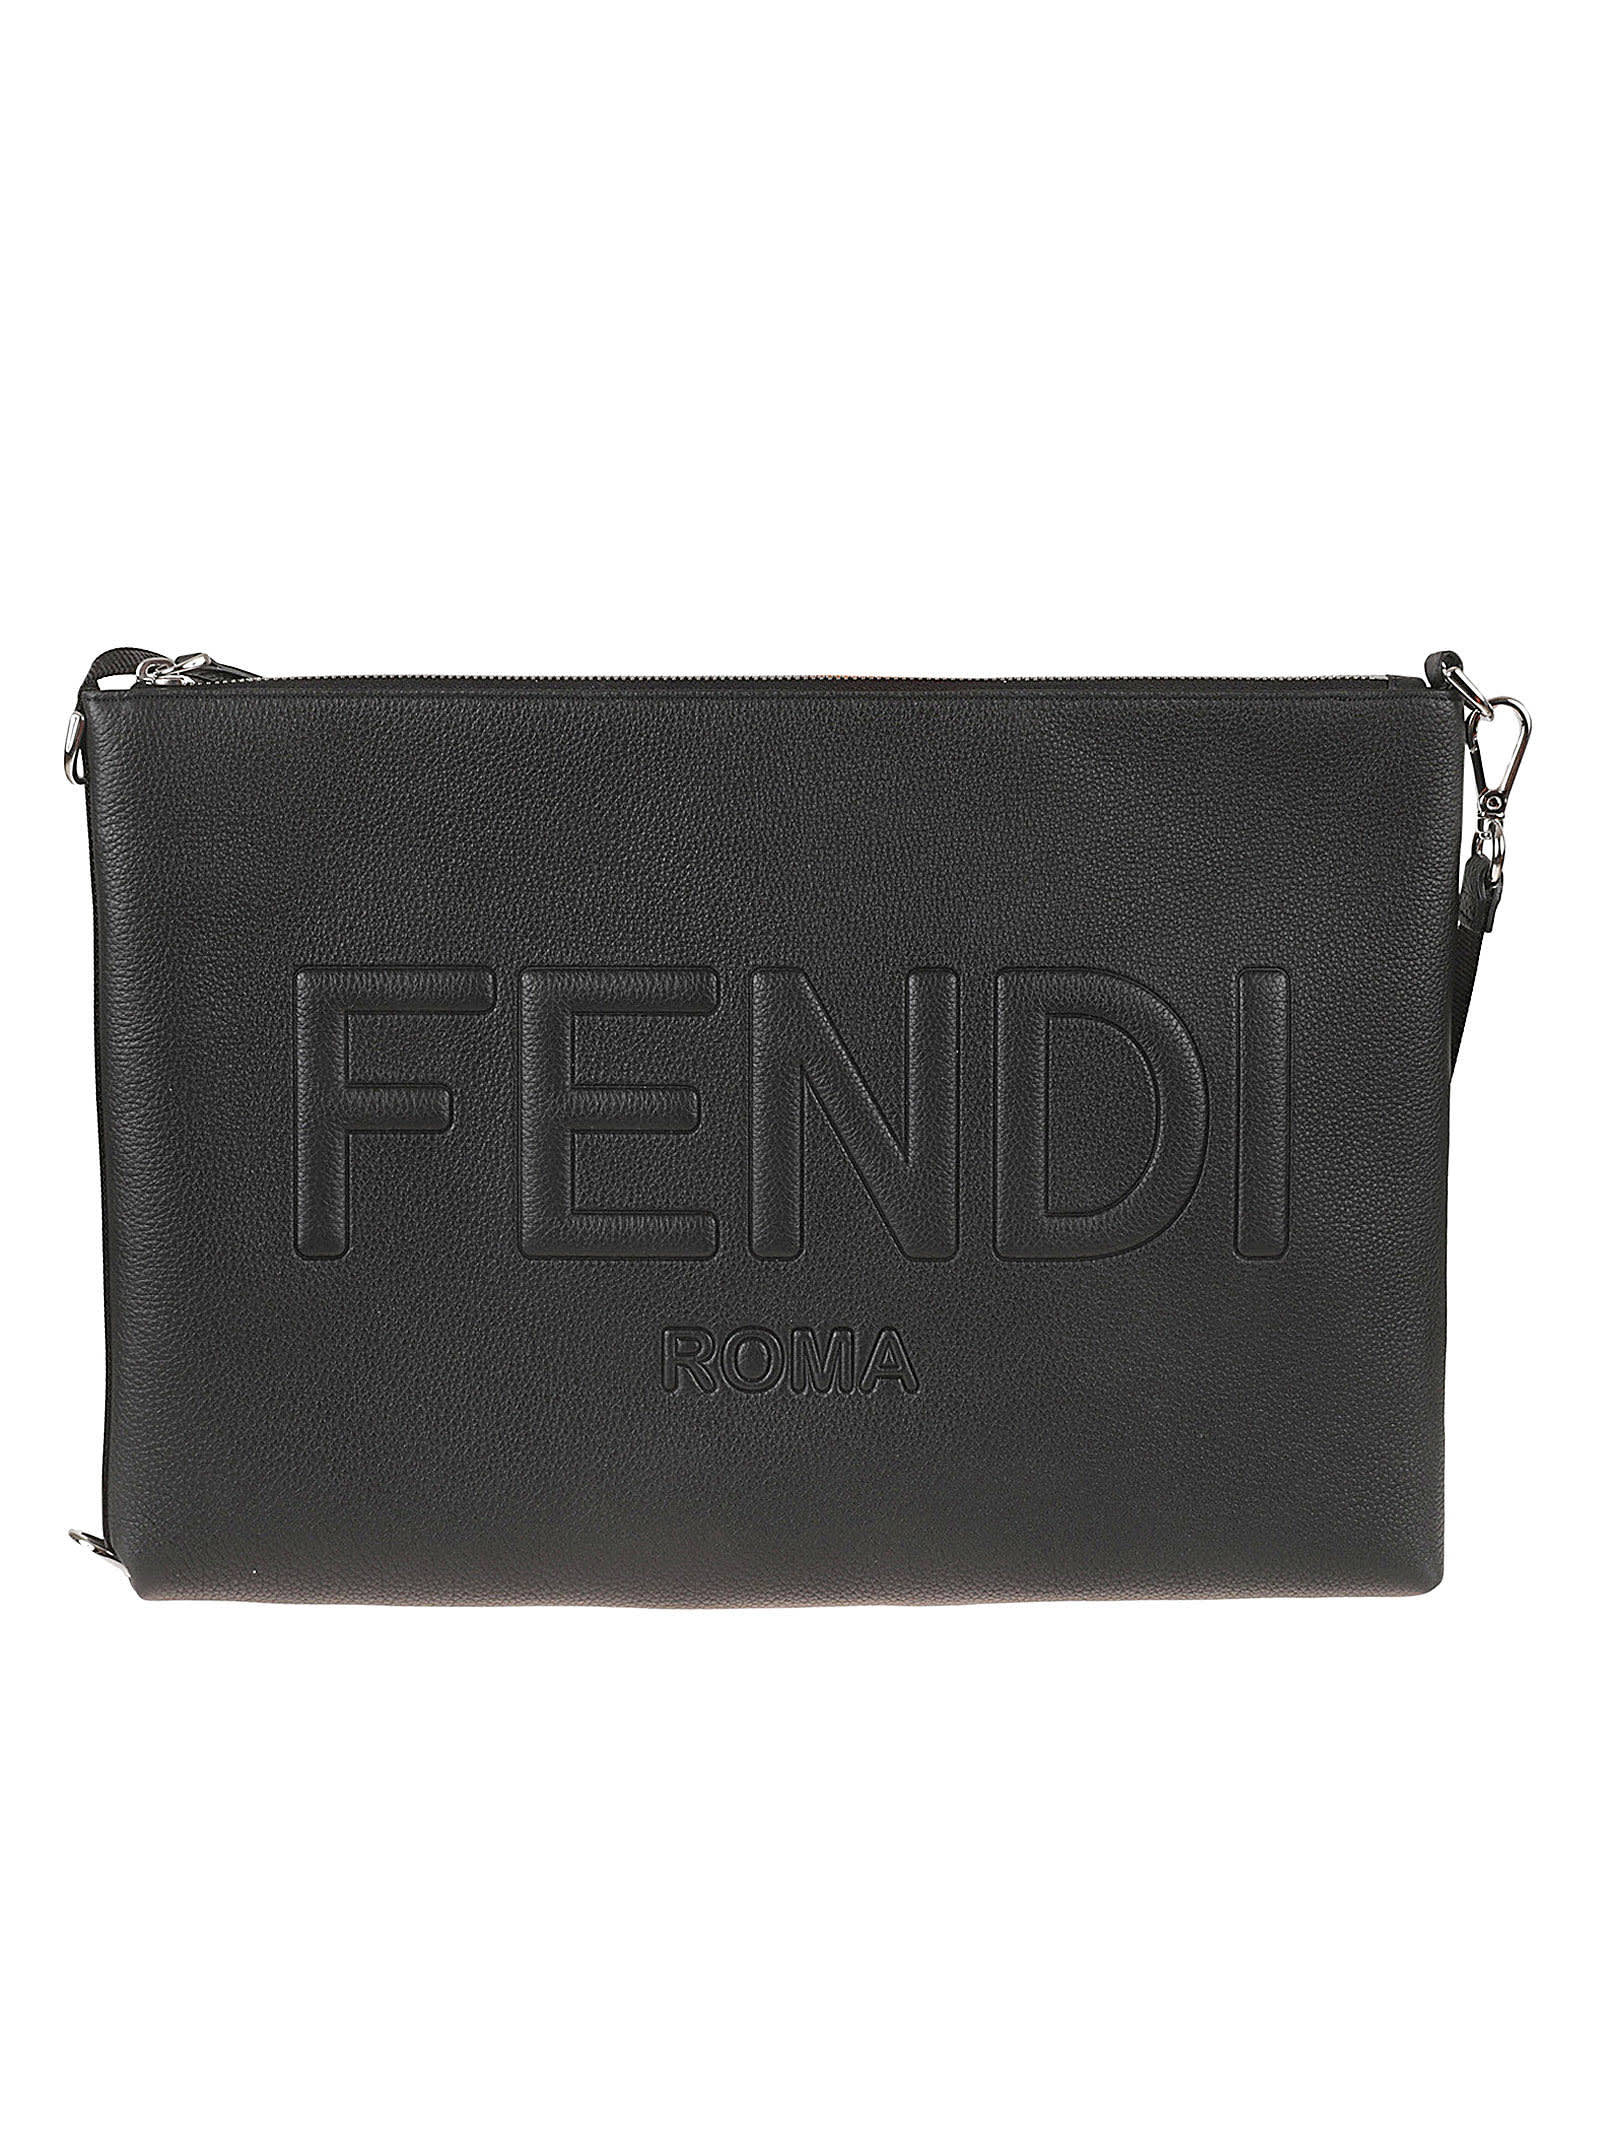 Fendi Logo Embossed Top Zip Clutch